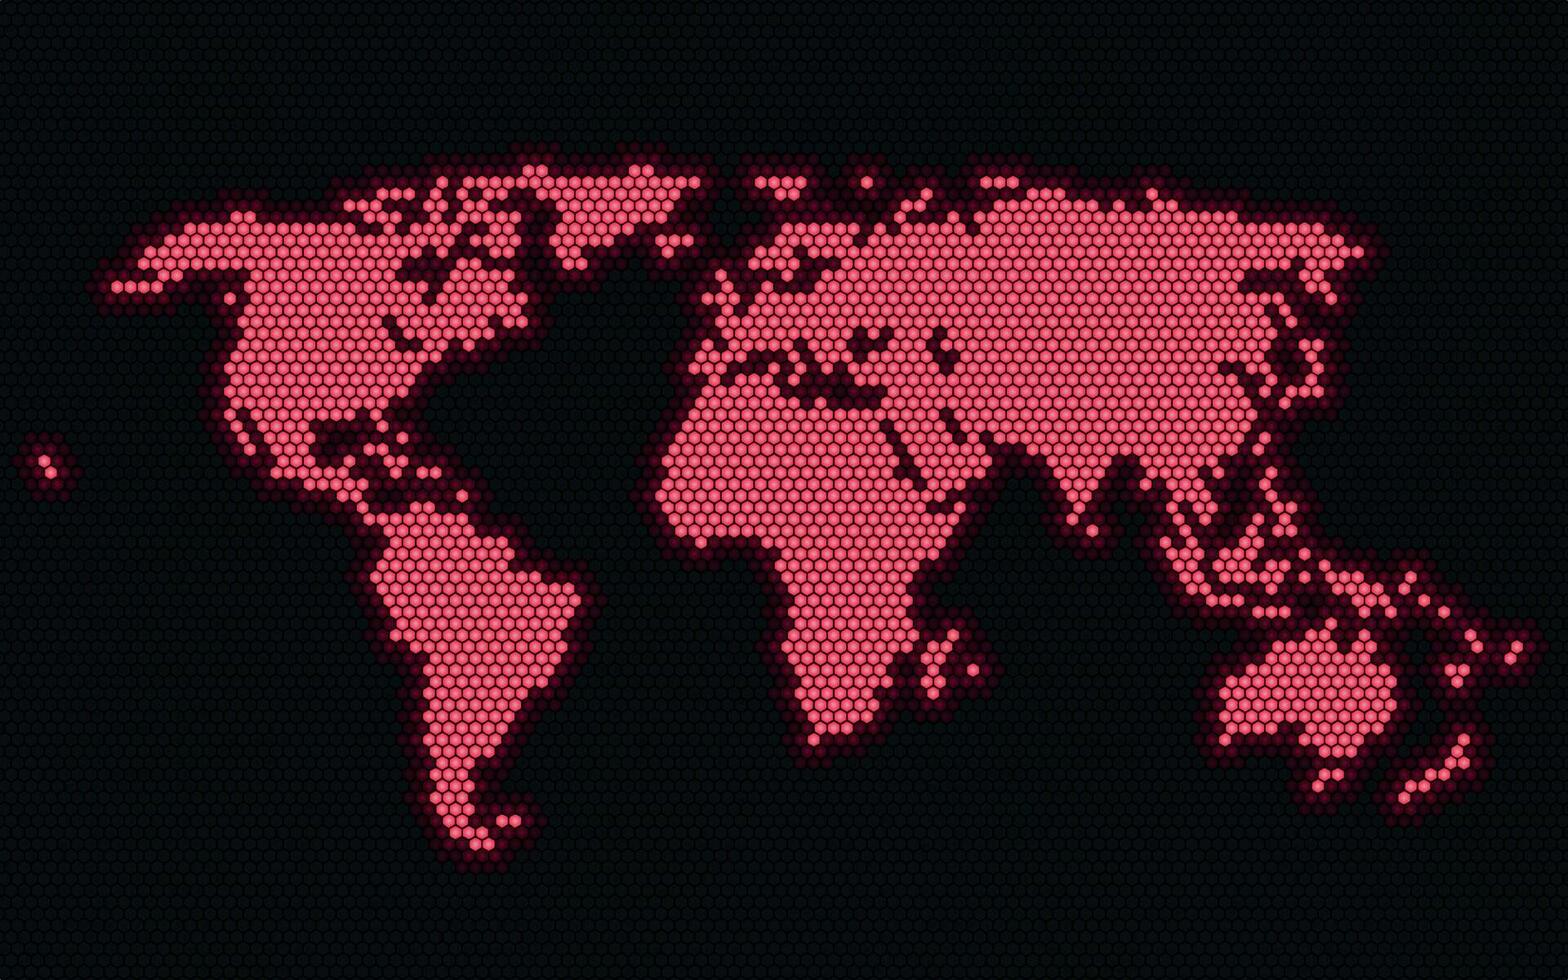 das Welt Karte ist gemacht oben von rot Punkte. Rosa glühend modern Welt Karte. tolle schwarz Hintergrund vektor